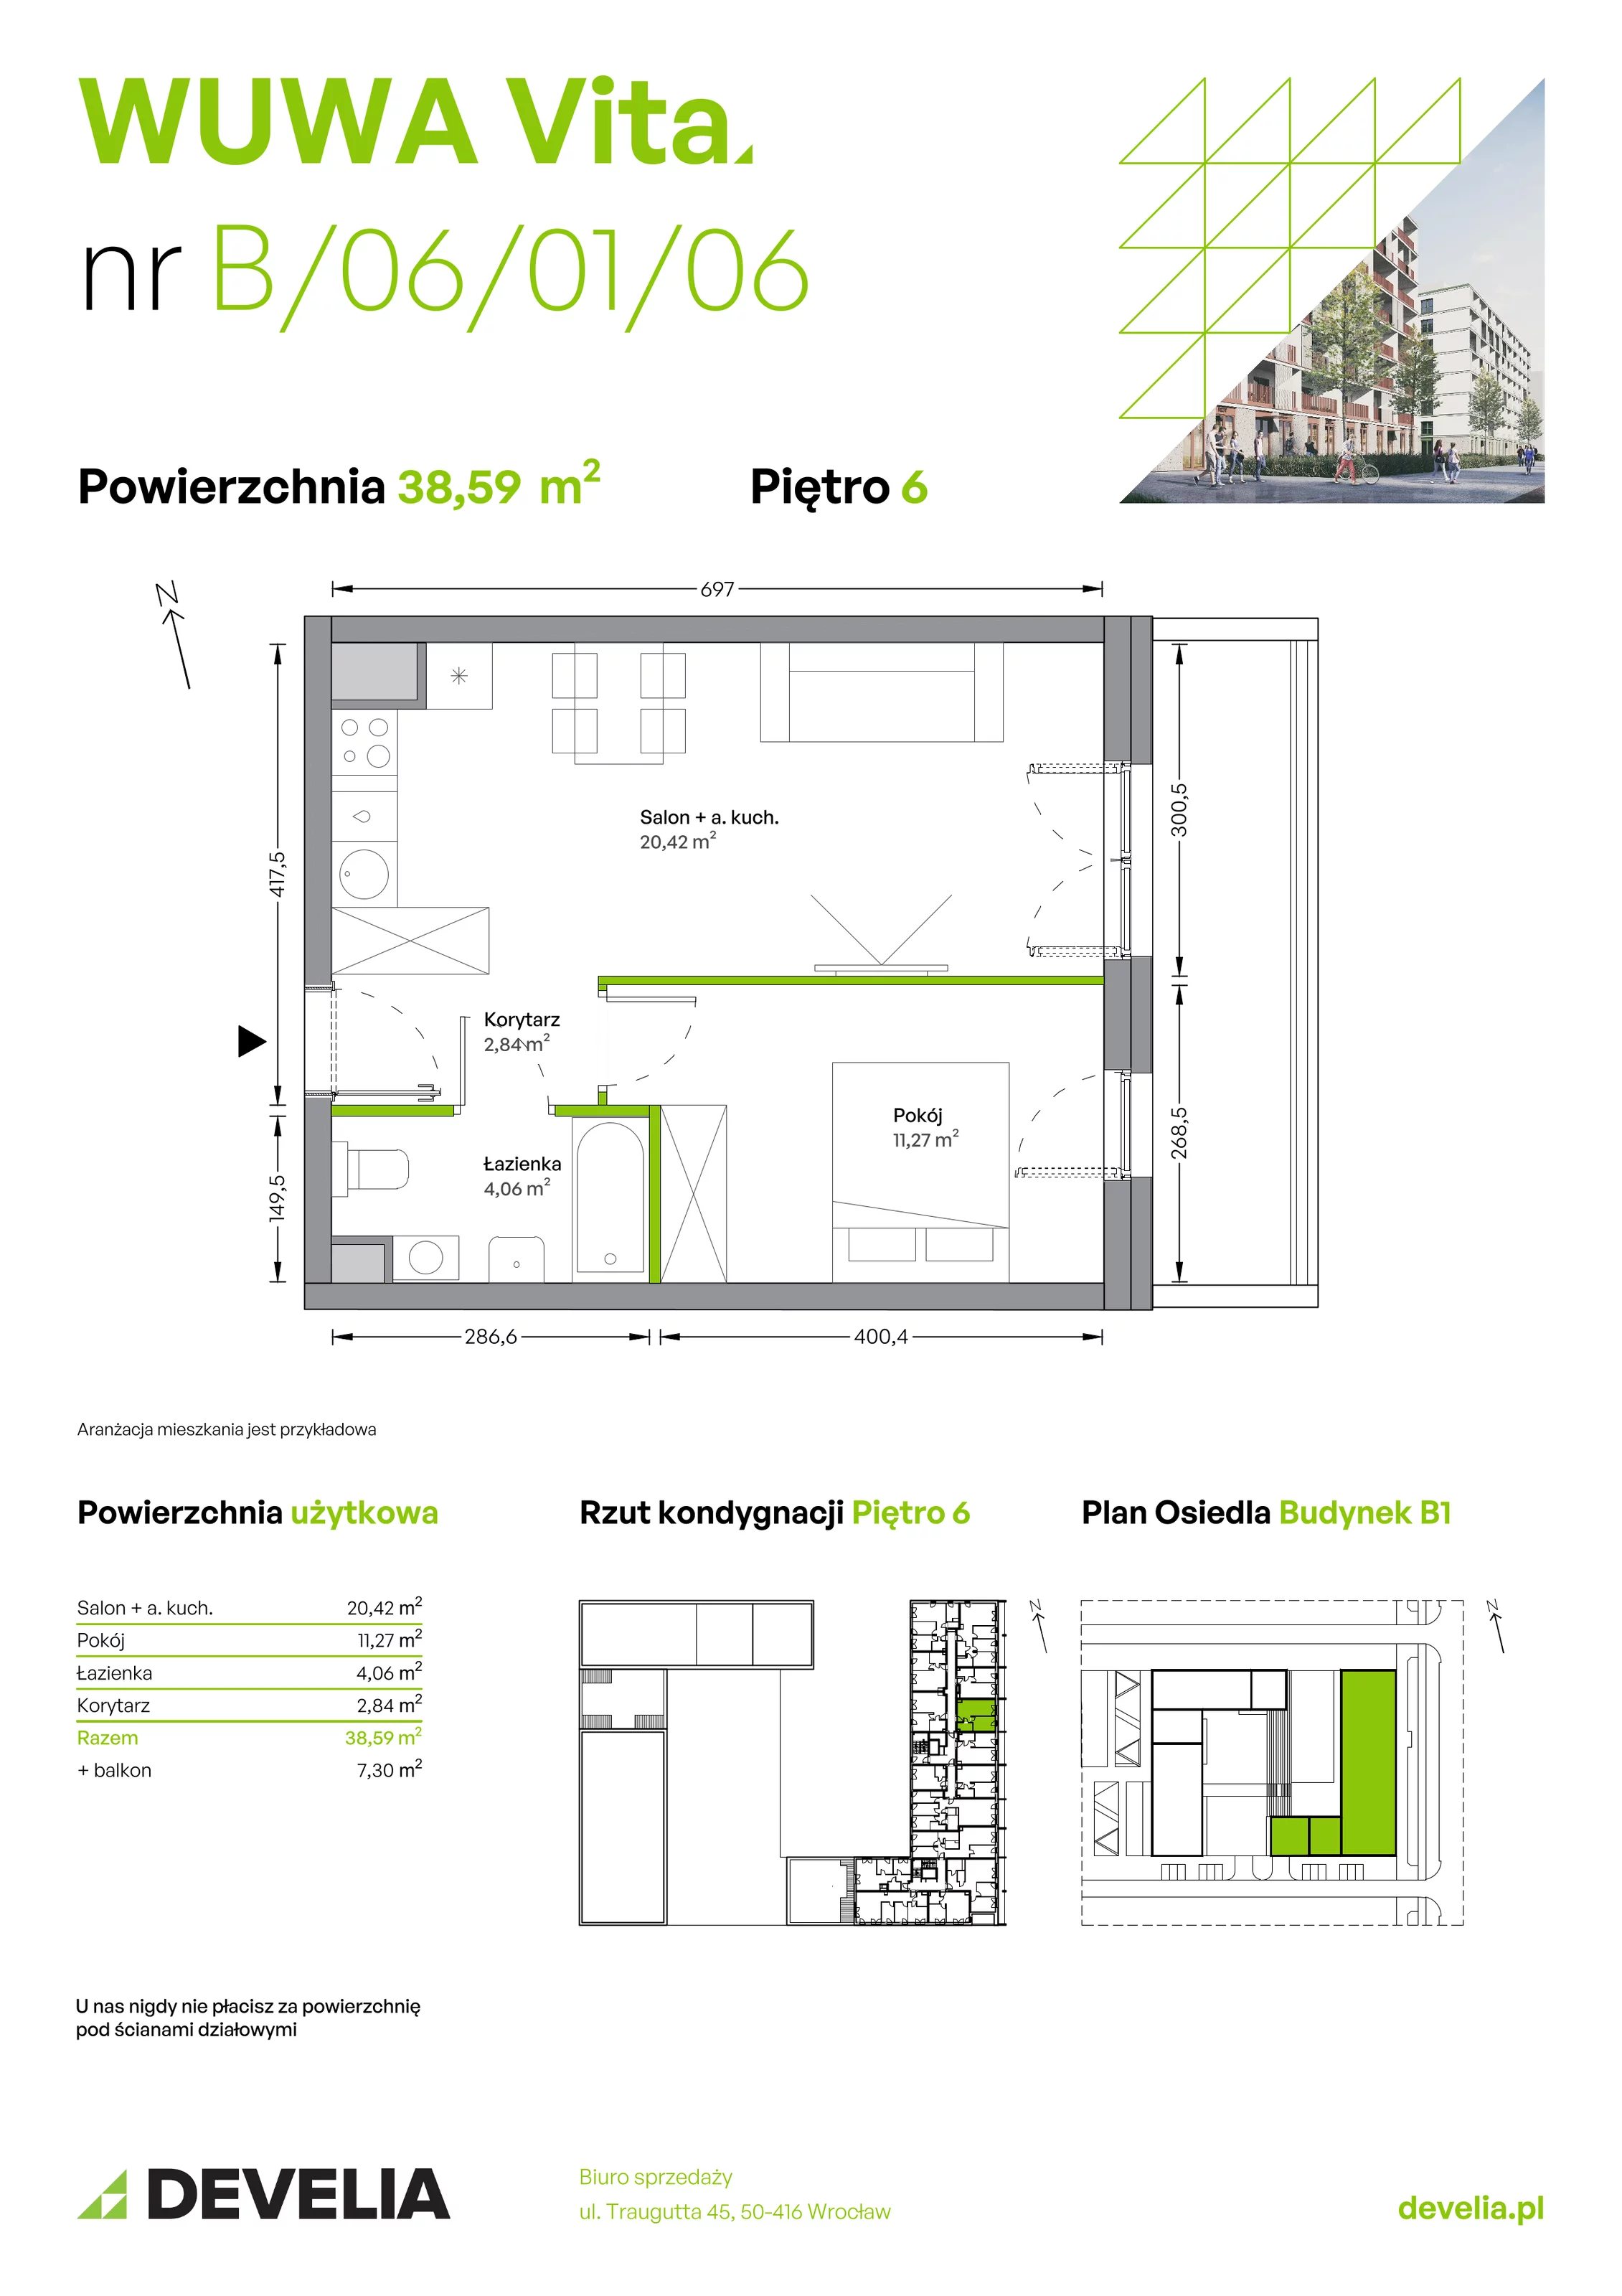 Mieszkanie 38,59 m², piętro 6, oferta nr B.06.01.06, WUWA Vita, Wrocław, Żerniki, Fabryczna, ul. Tadeusza Brzozy